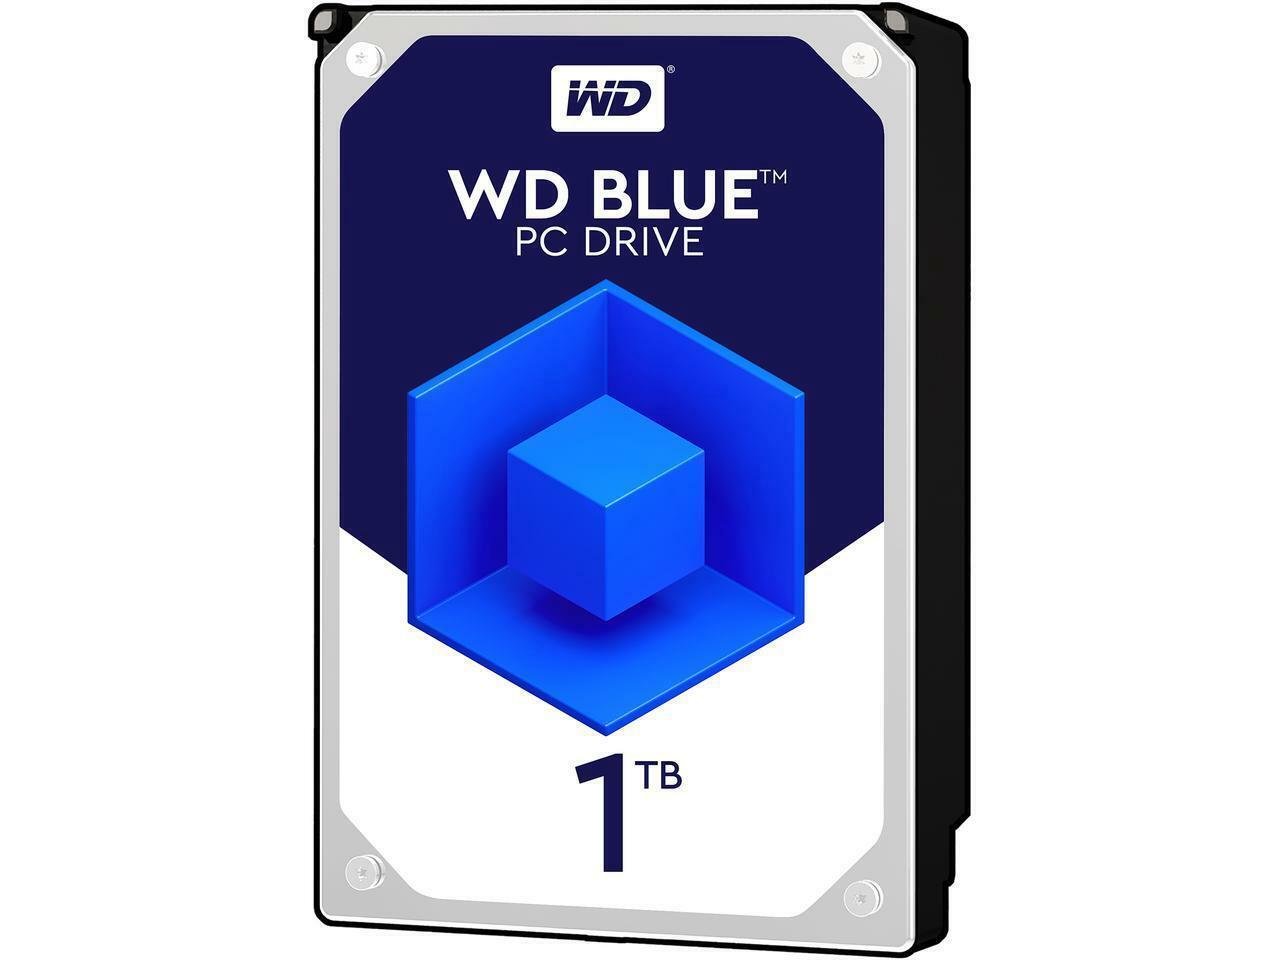 NEW,Dell Studio 540, 1TB Hard Drive with Windows 10 Home 64-Bit Preloaded